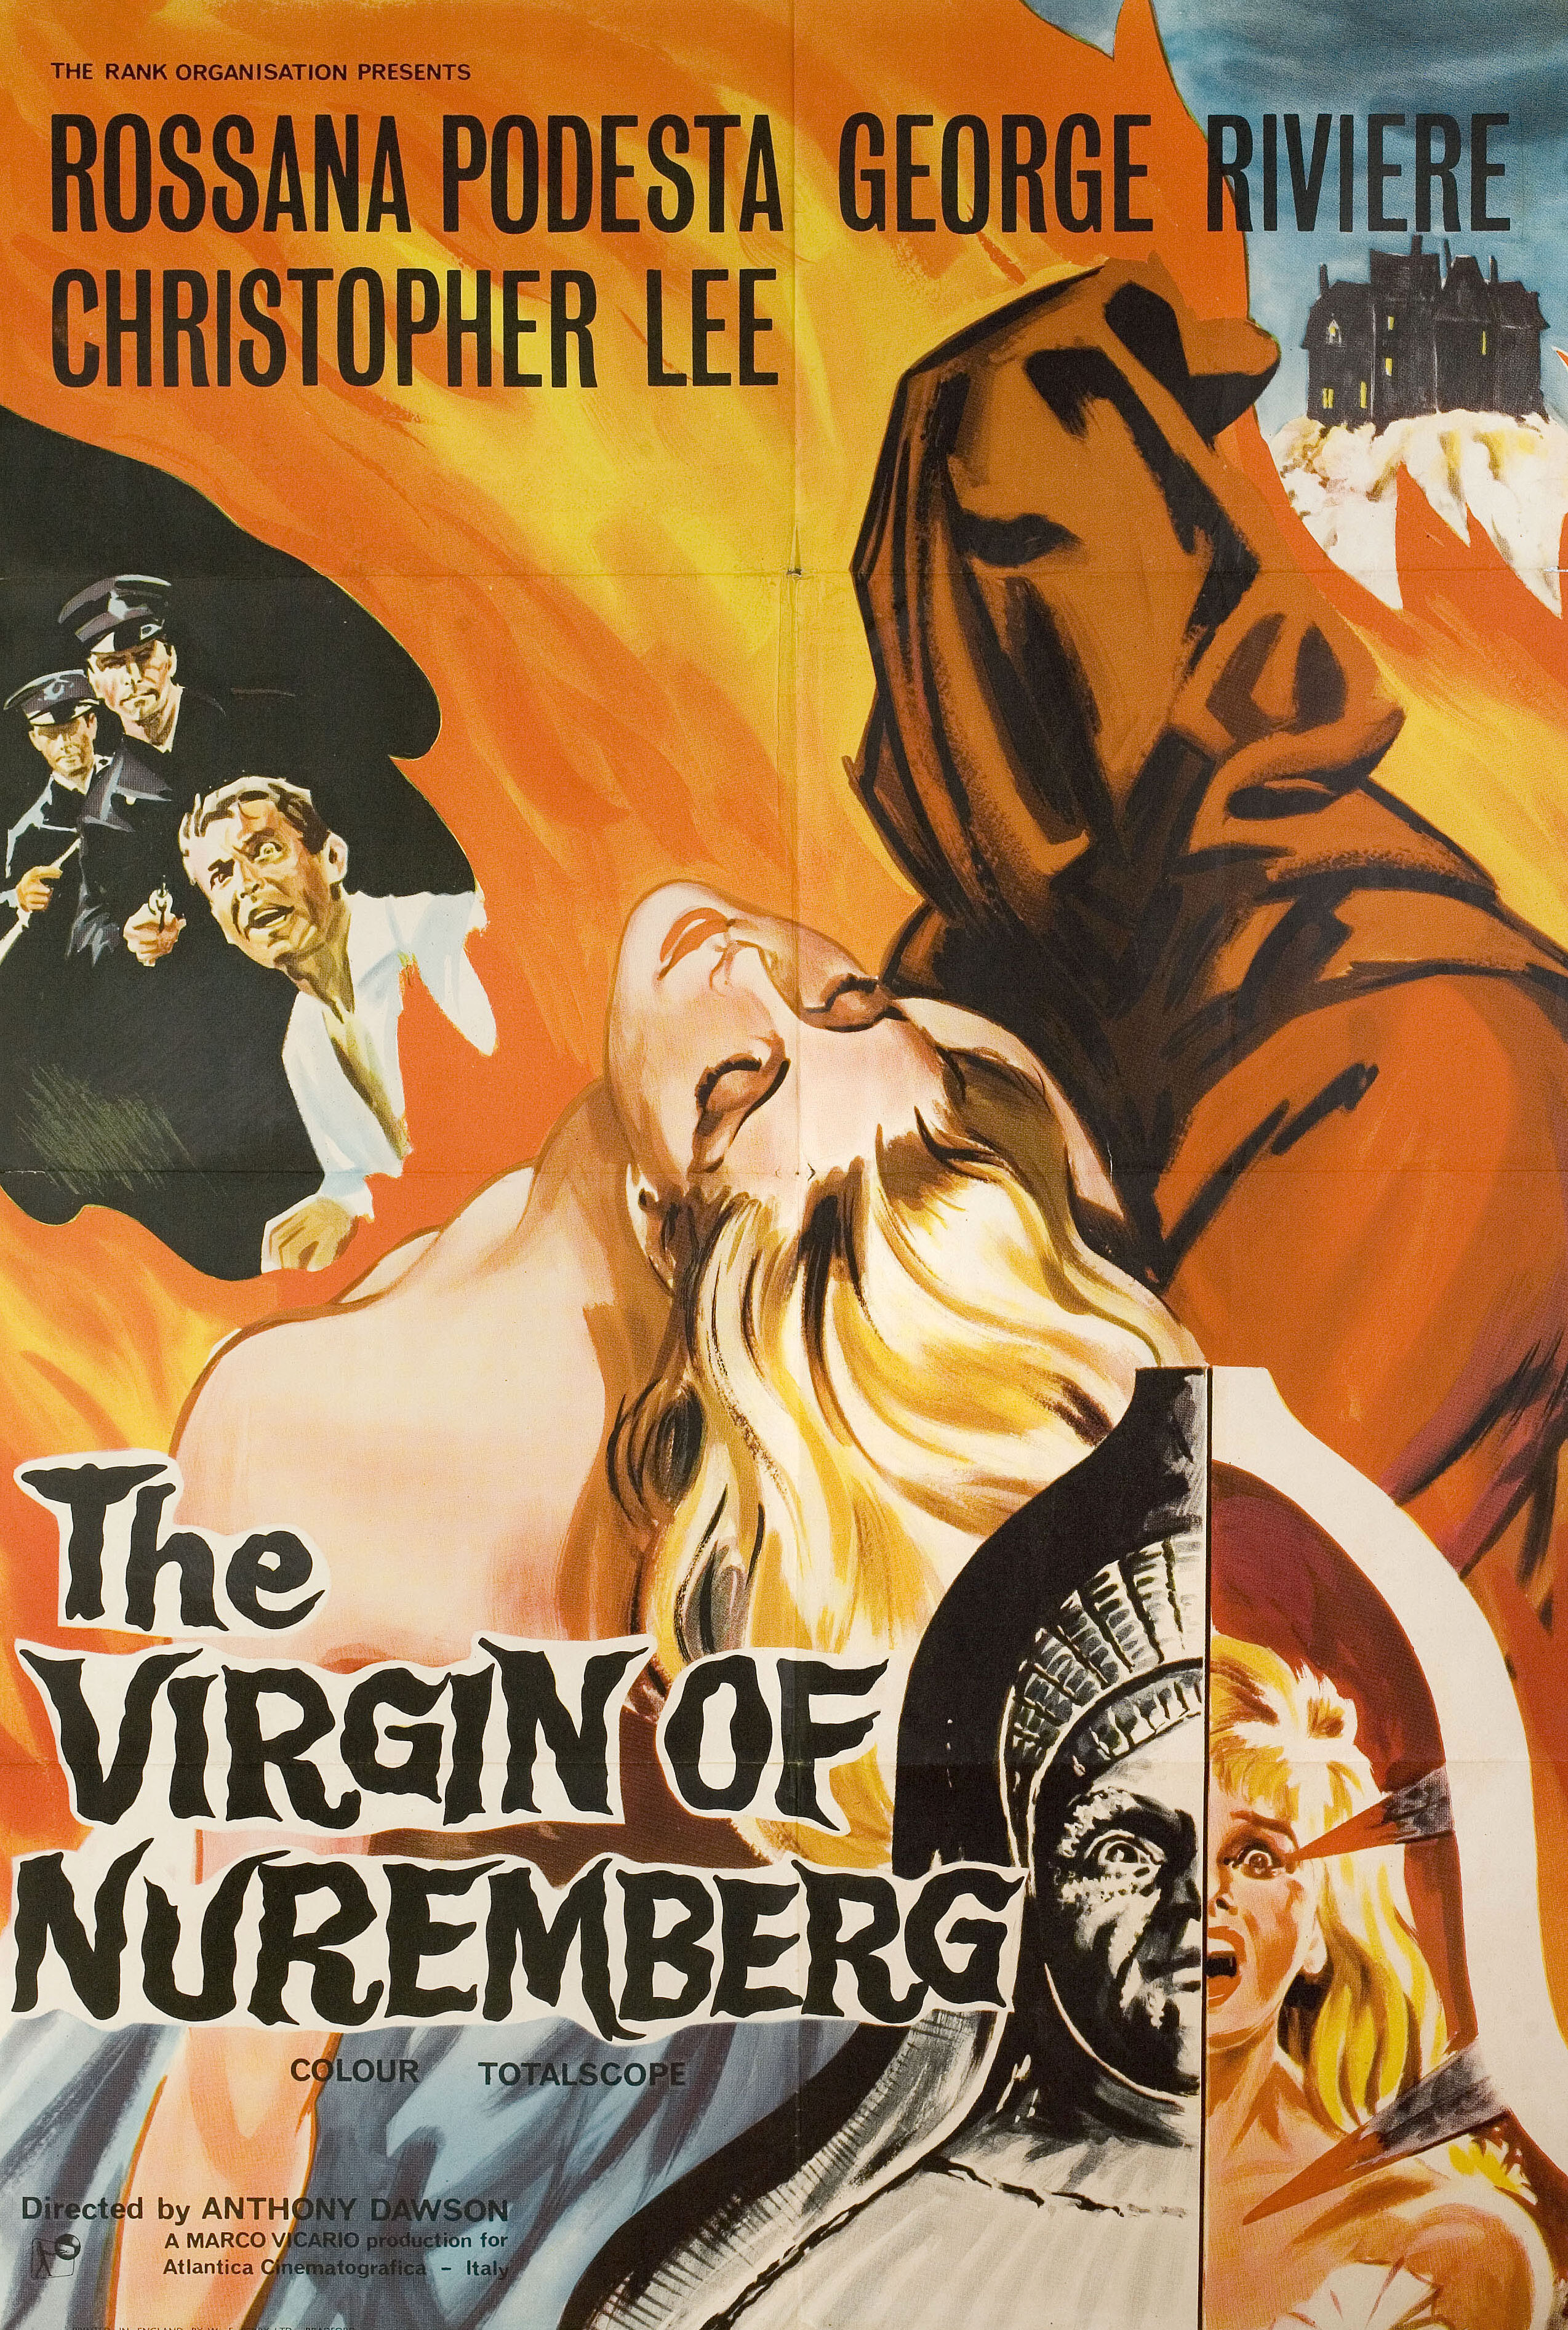 Нюрнбергская дева (Horror Castle, 1963), режиссёр Антонио Маргерити, британский постер к фильму (ужасы, 1964 год)